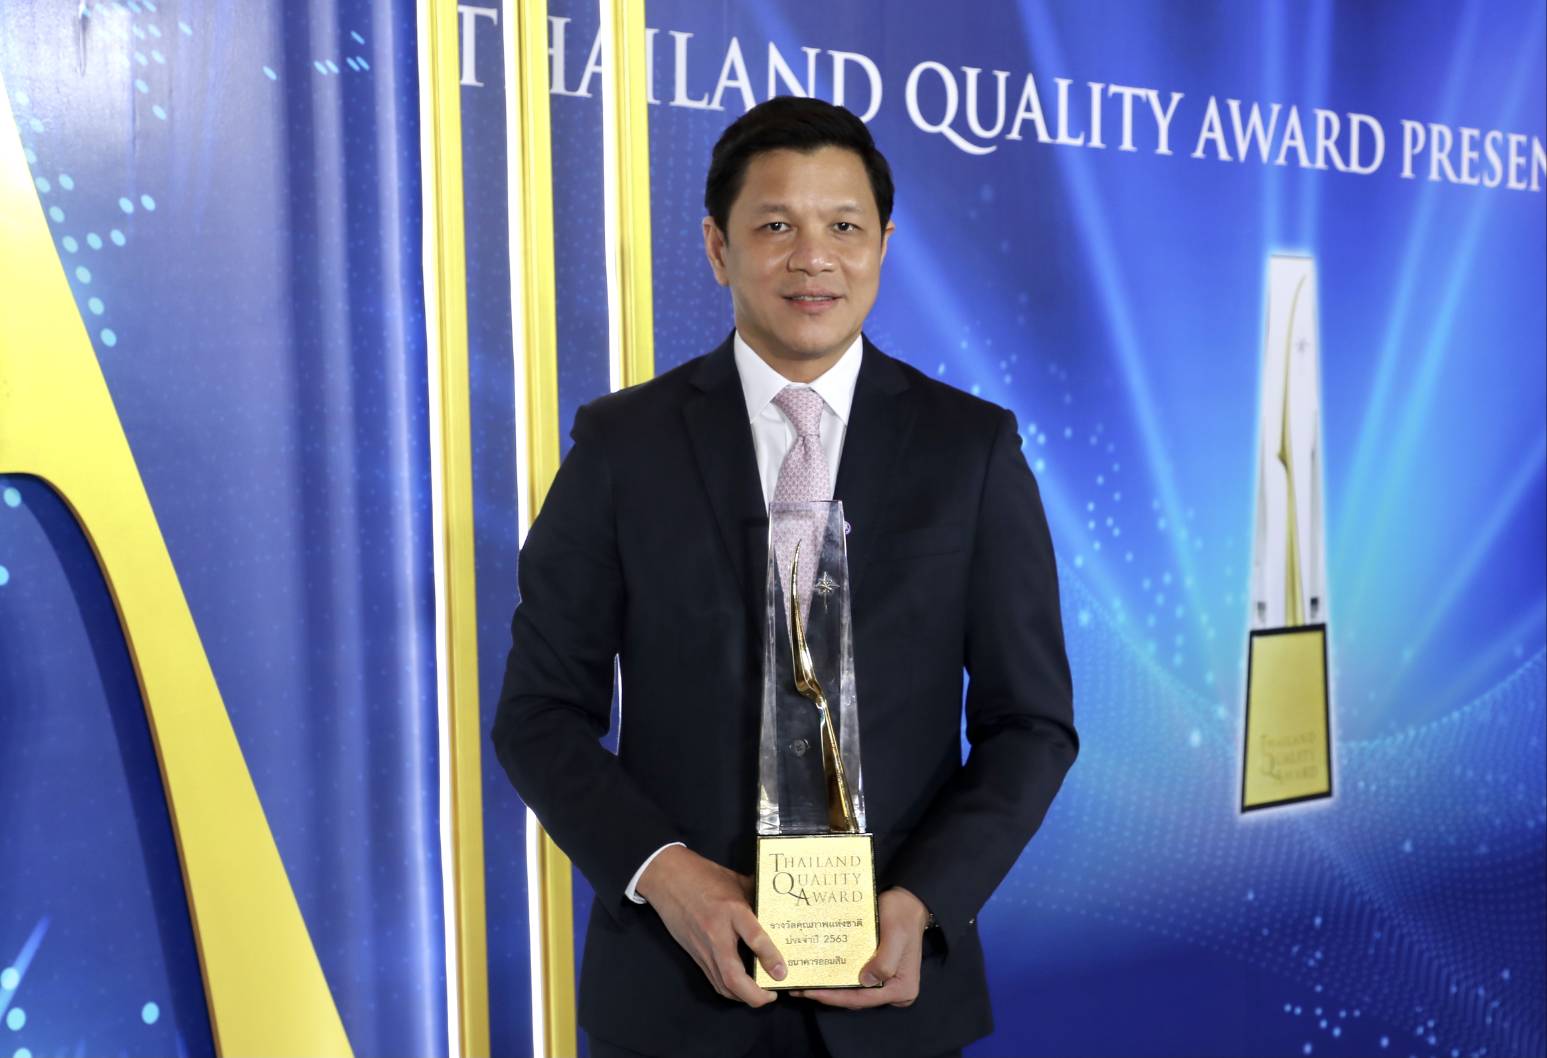 ธ.ออมสิน รับรางวัลคุณภาพแห่งชาติ Thailand Quality Award  ประจำปี 2563